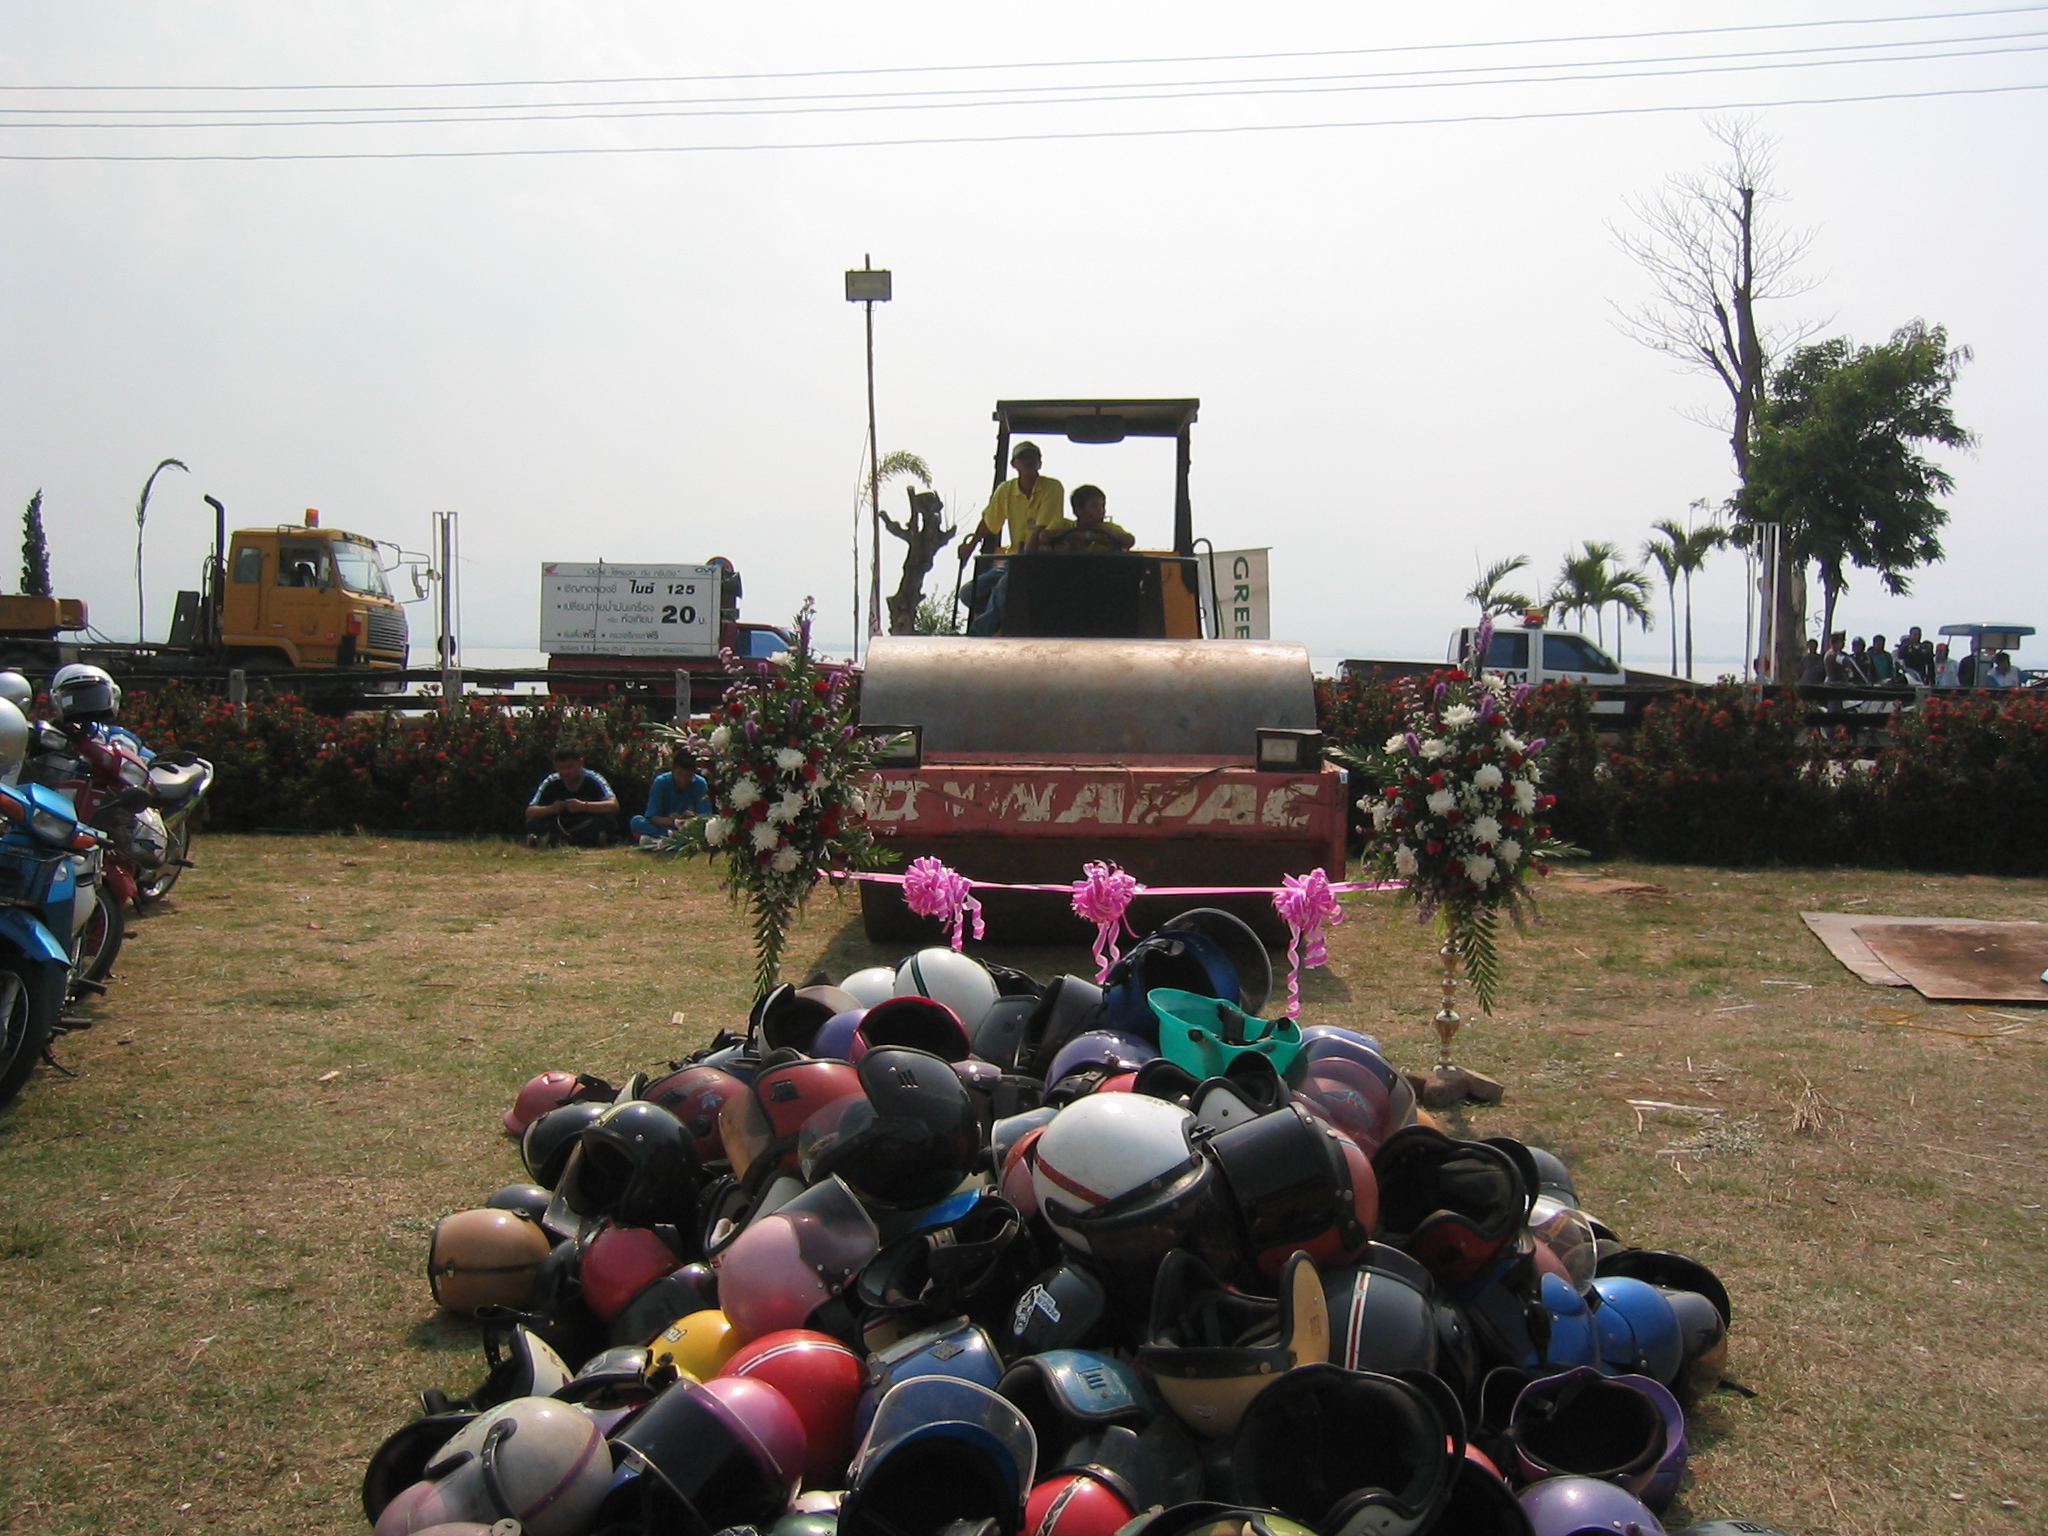 กรีนวิงจัดโครงการ "รณรงค์เพื่อป้องกันอุบัติเหตุ ช่วงเทศกาลสงกรานต์" มอบหมวกกันน็อค 500 ใบ วันที่ 5 เม.ย. 2547